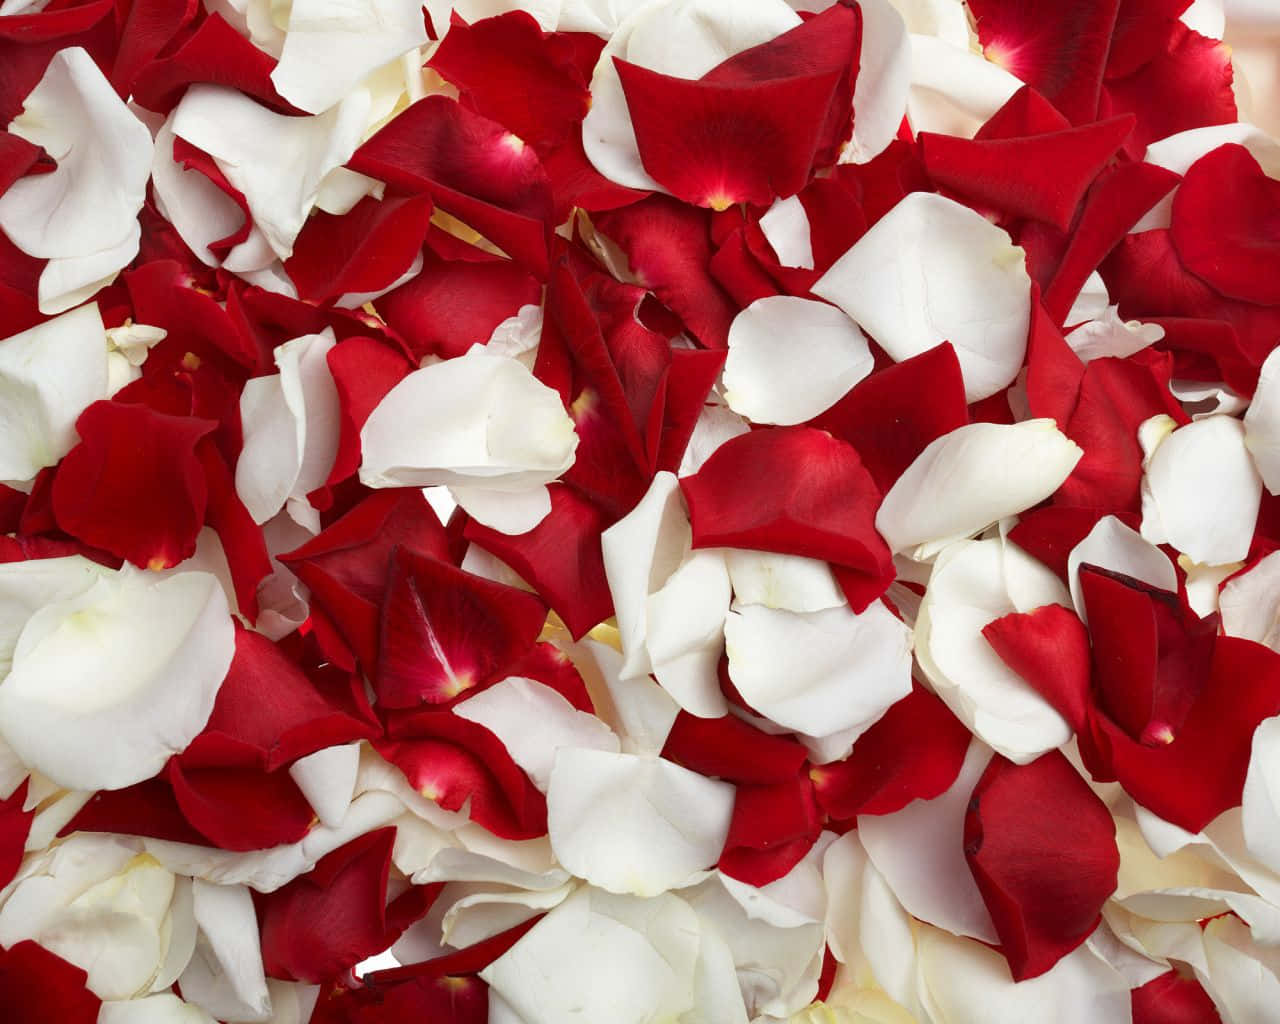 Vibrant Rose Petal Close-up Wallpaper